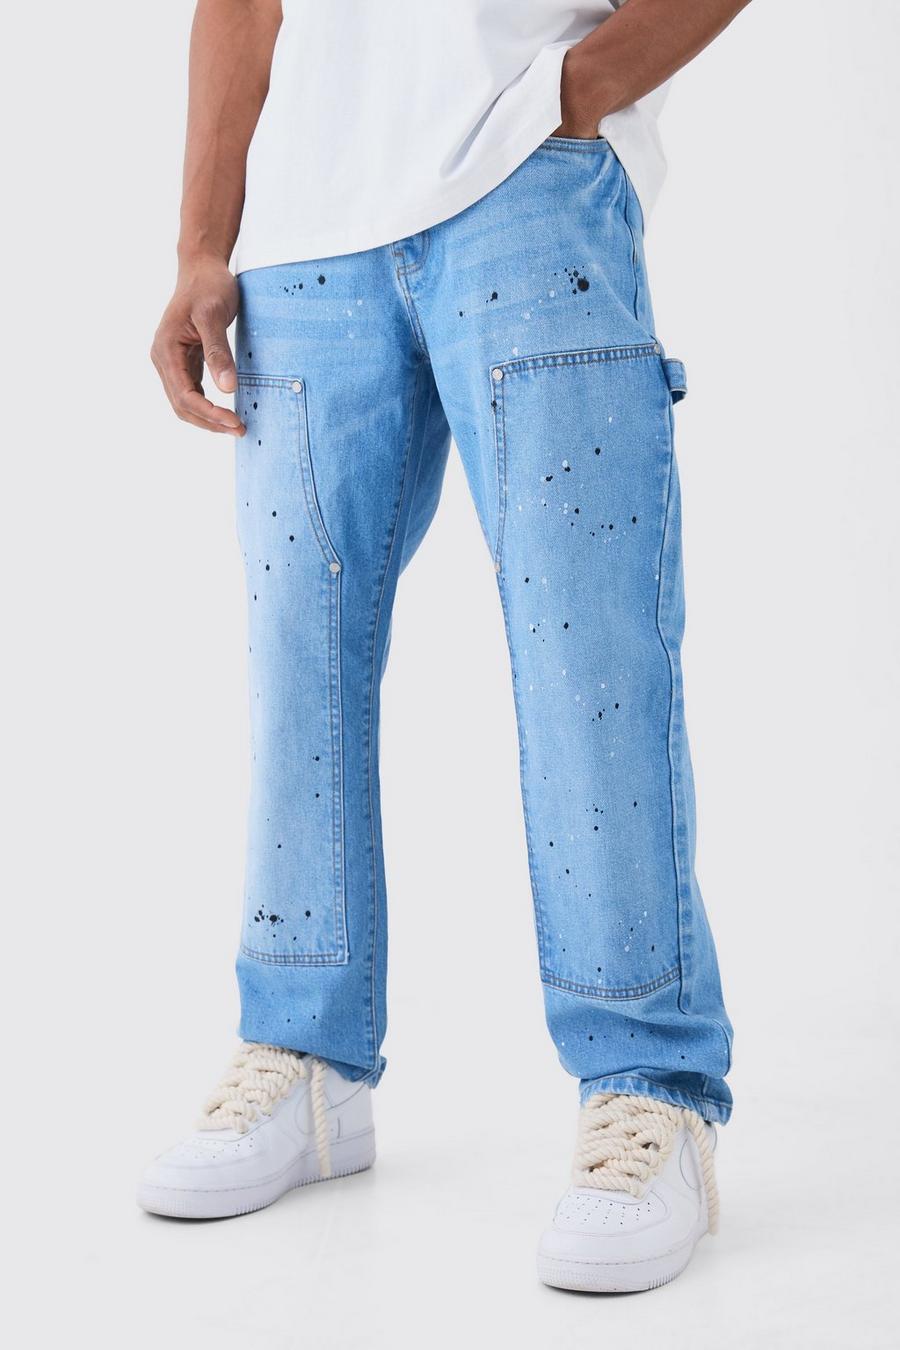 Lockere Jeans mit Farbspritzern, Light blue